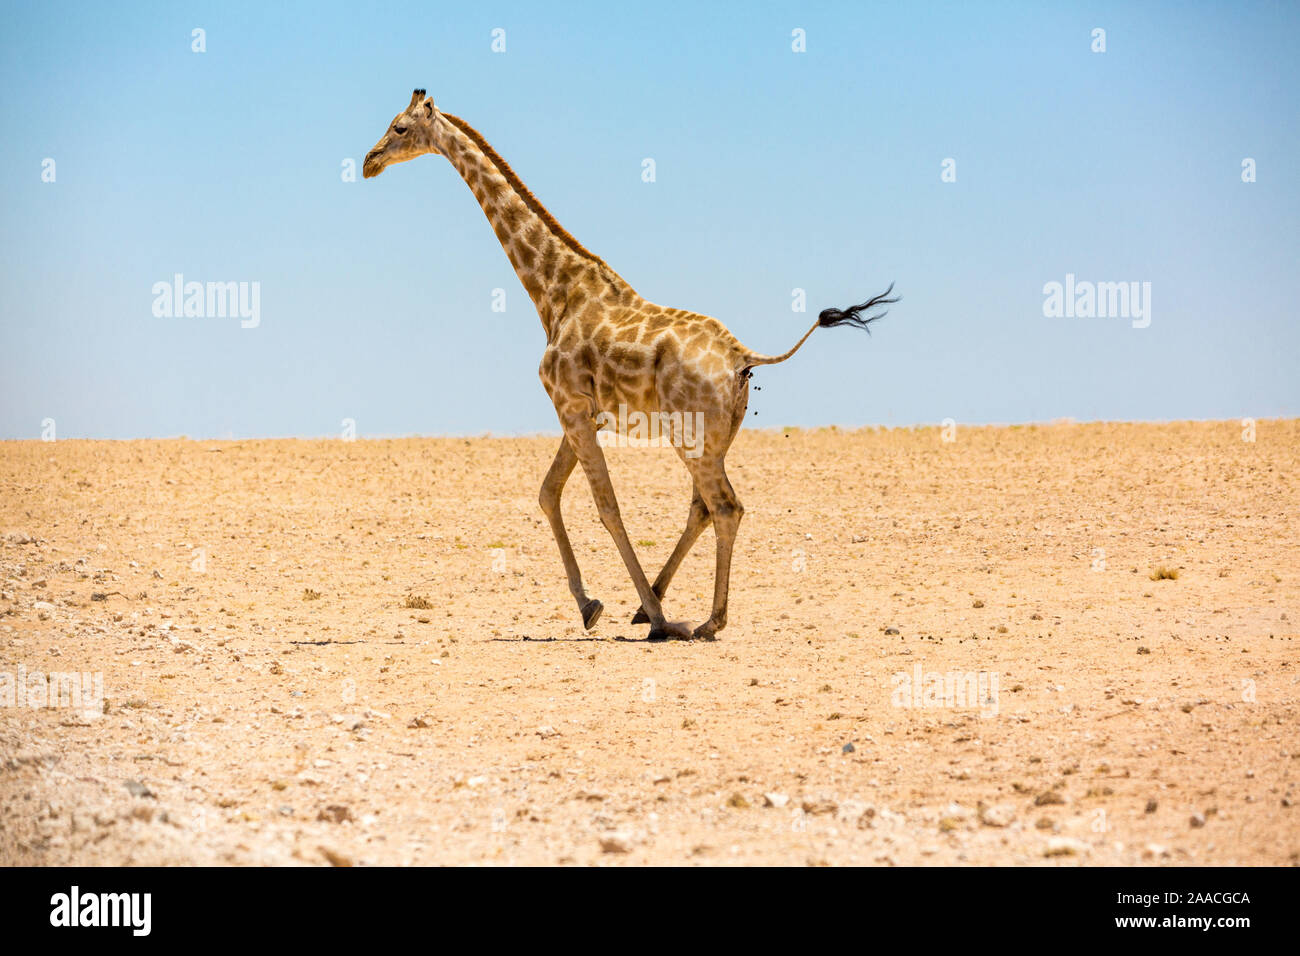 L'exécution d'une girafe et un désert plat désert de pierre, la Namibie, l'Afrique Banque D'Images